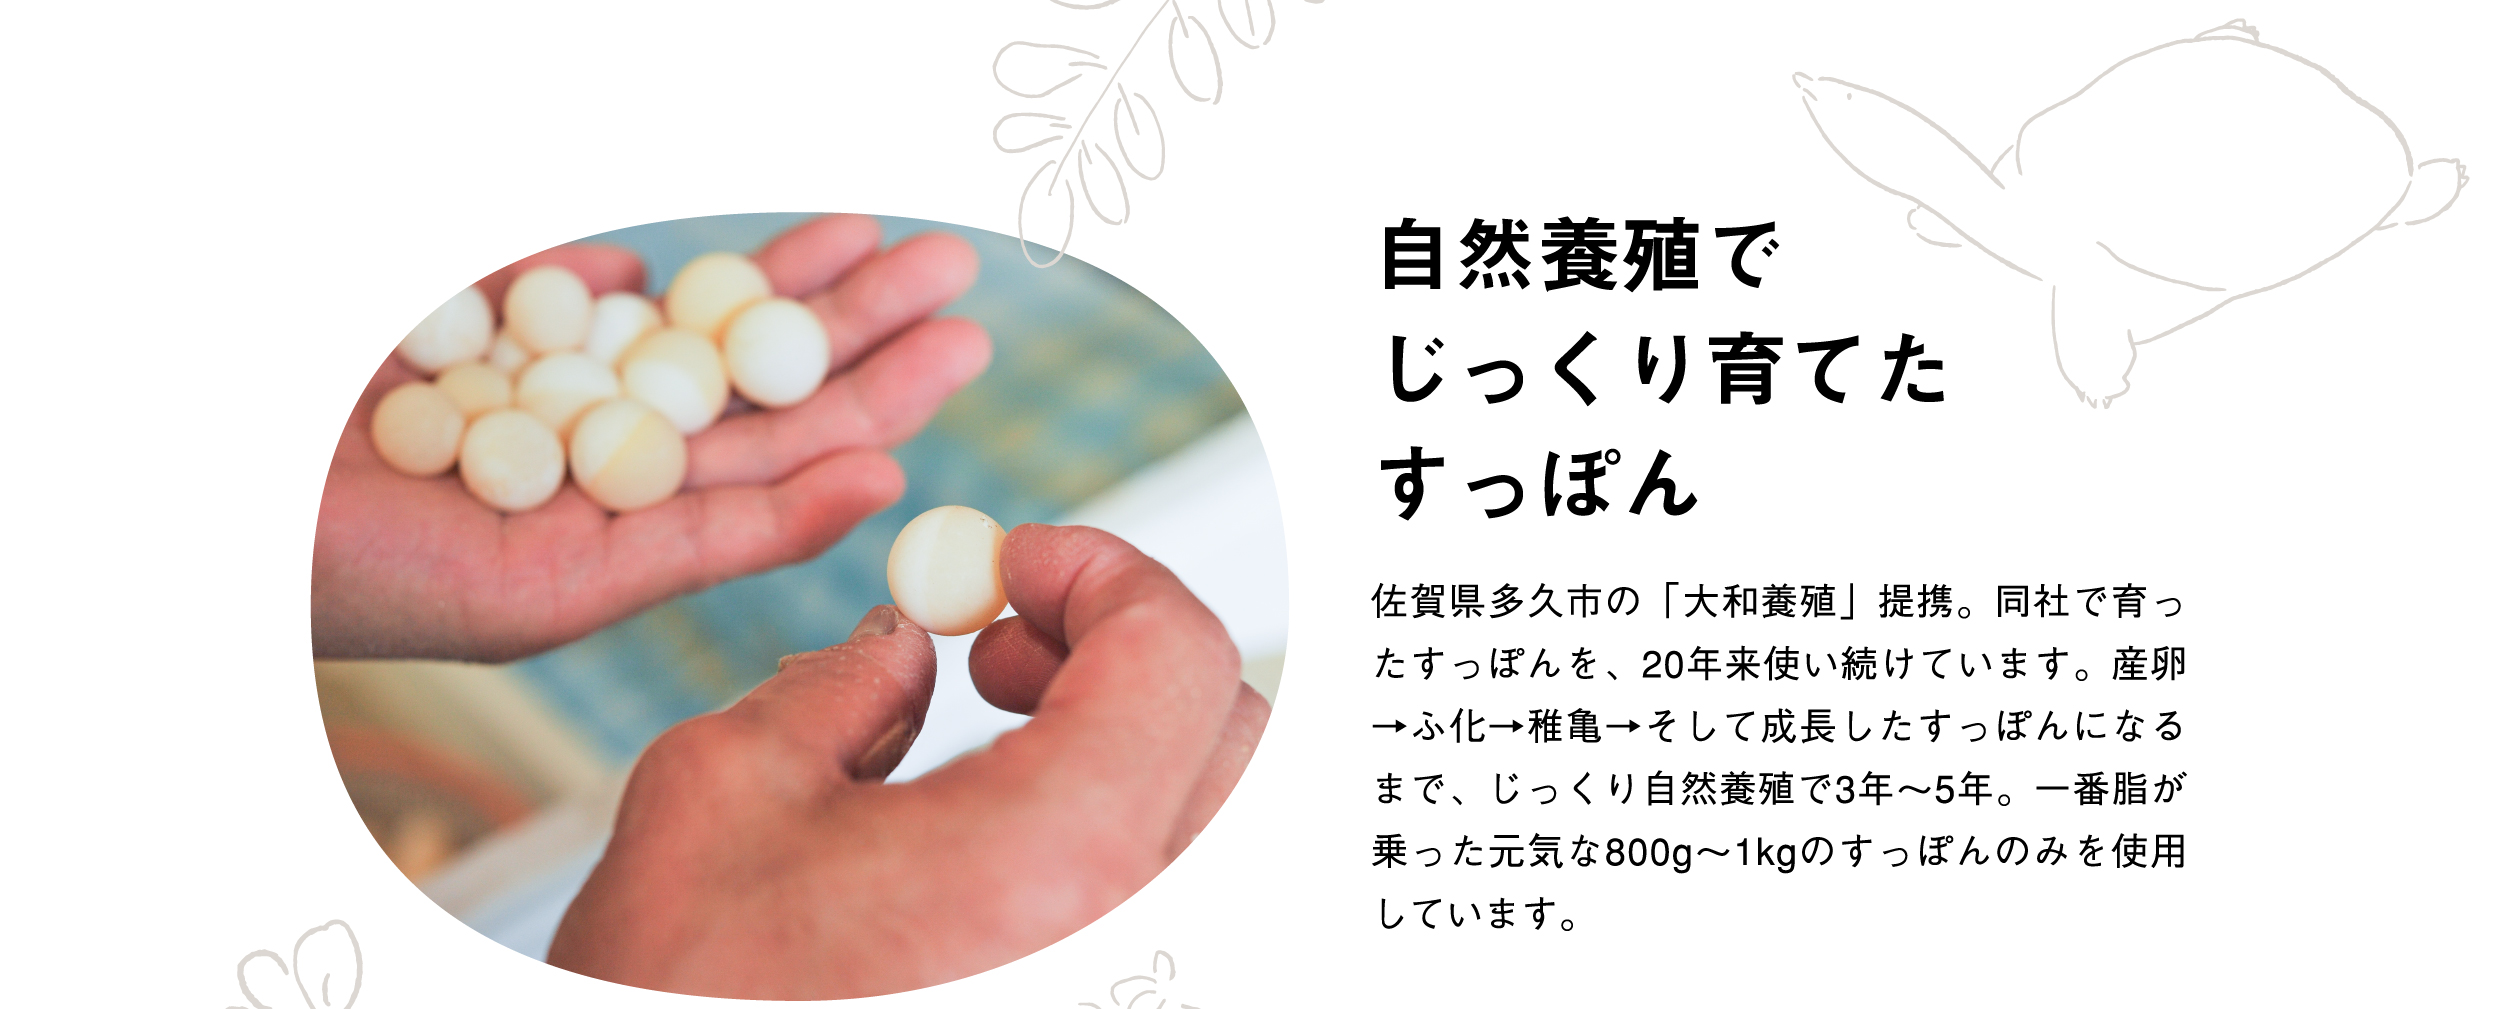 自然養殖でじっくり育てたすっぽん佐賀県多久市の「大和養殖」提携。同社で育ったすっぽんを、20年来使い続けています。産卵→ふ化→稚亀→そして成長したすっぽんになるまで、じっくり自然養殖で3年～5年。一番脂が乗った元気な800g～1kgのすっぽんのみを使用しています。